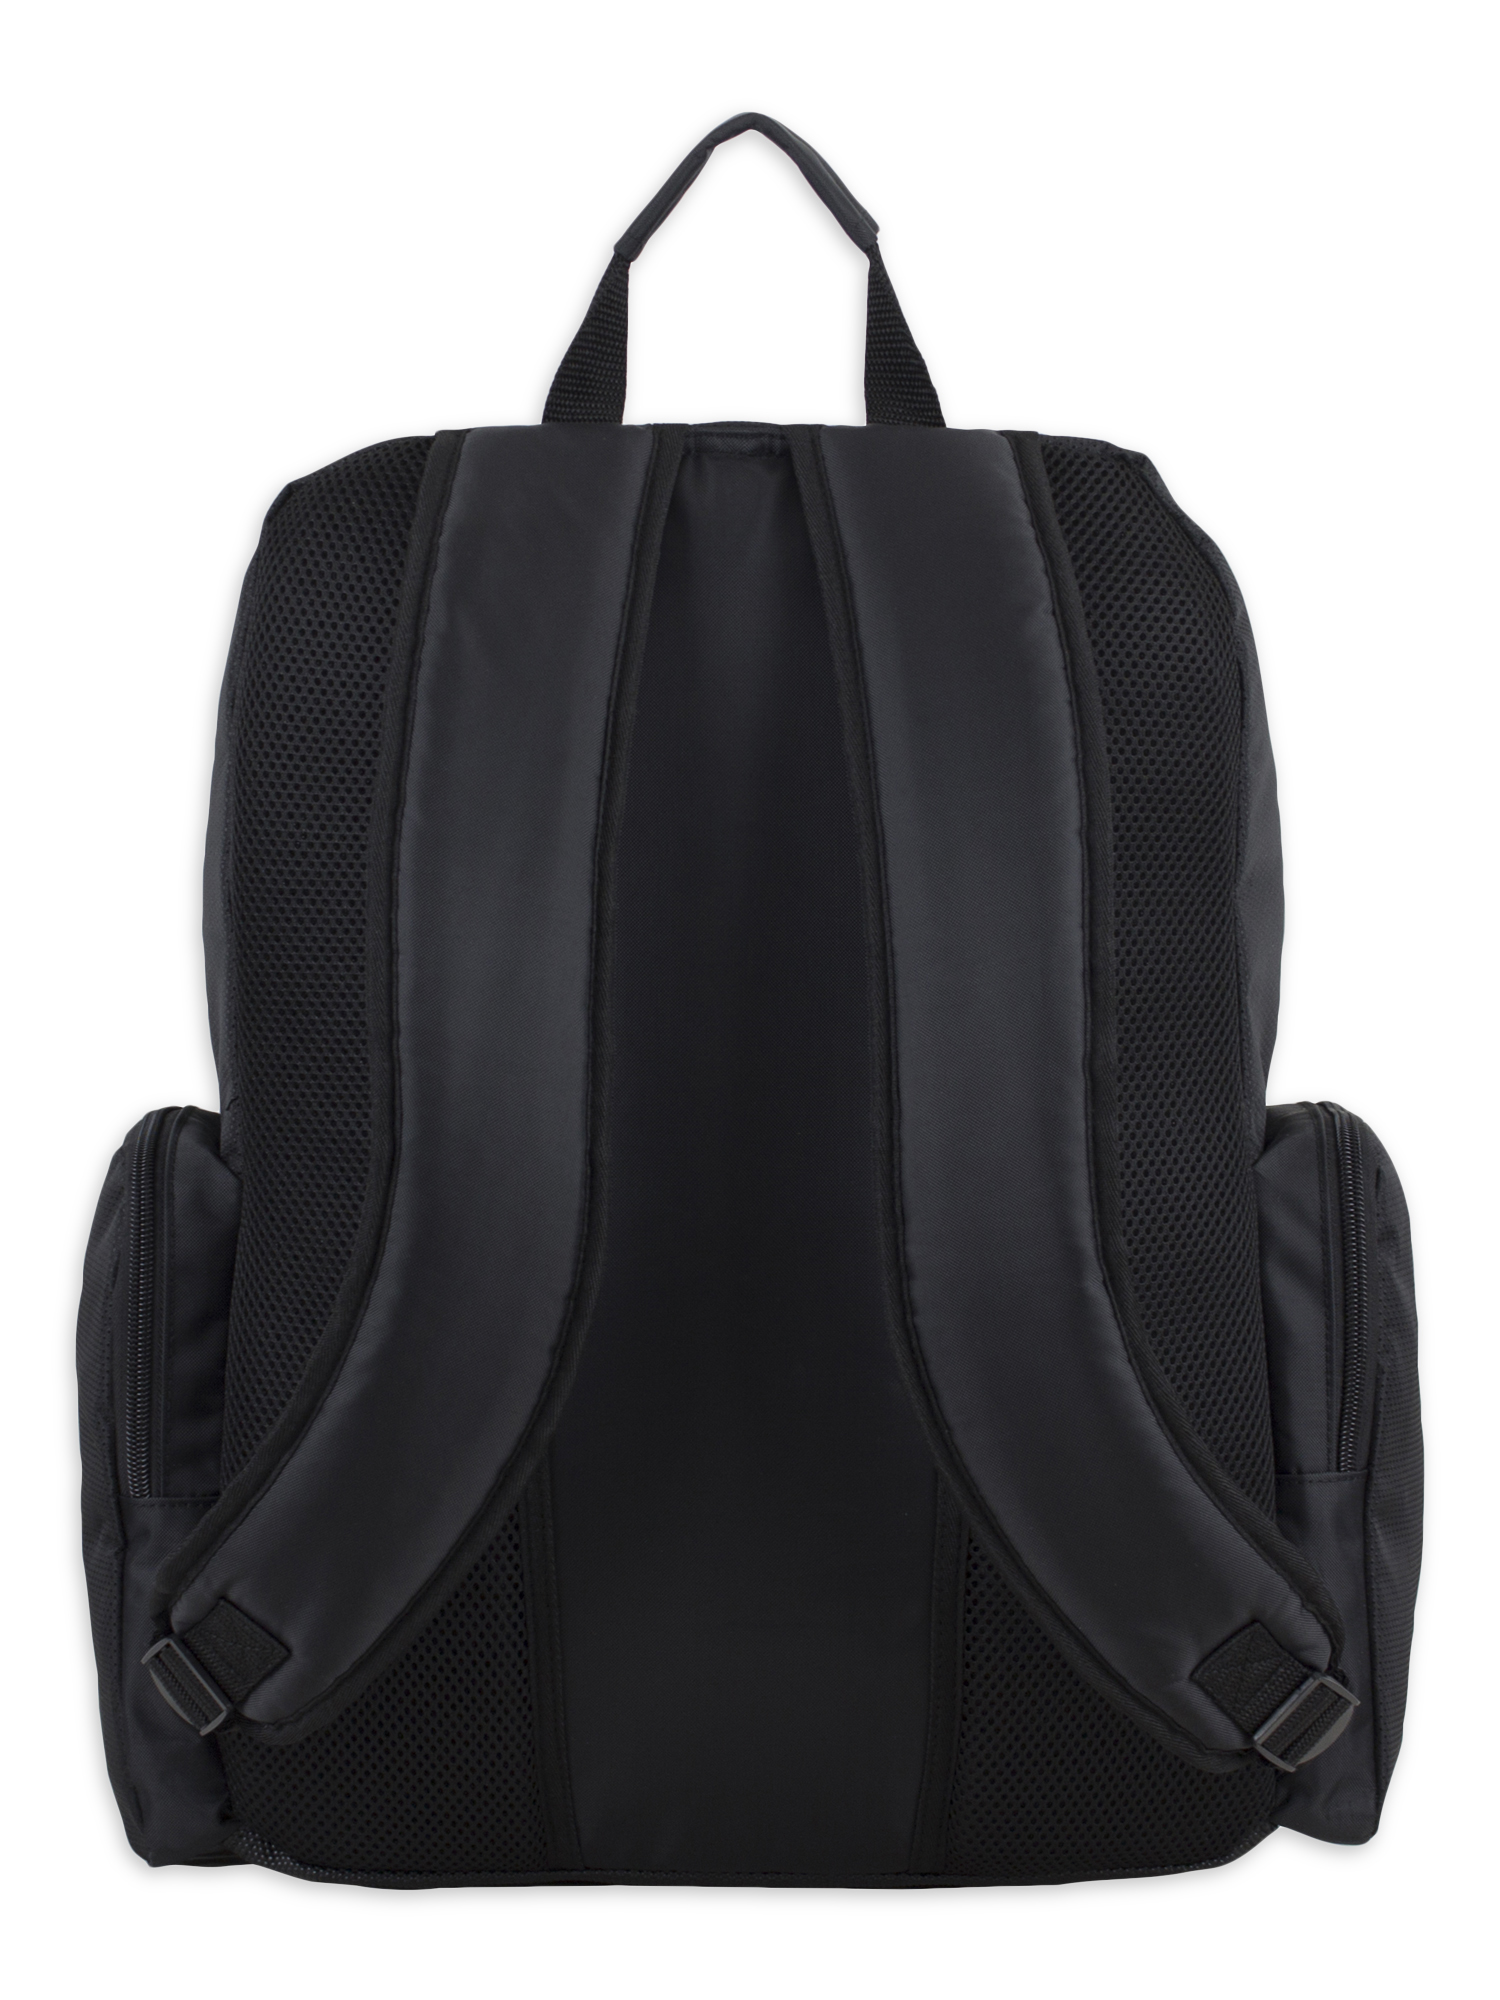 Eastsport Odyssey Backpack, Black - image 3 of 7